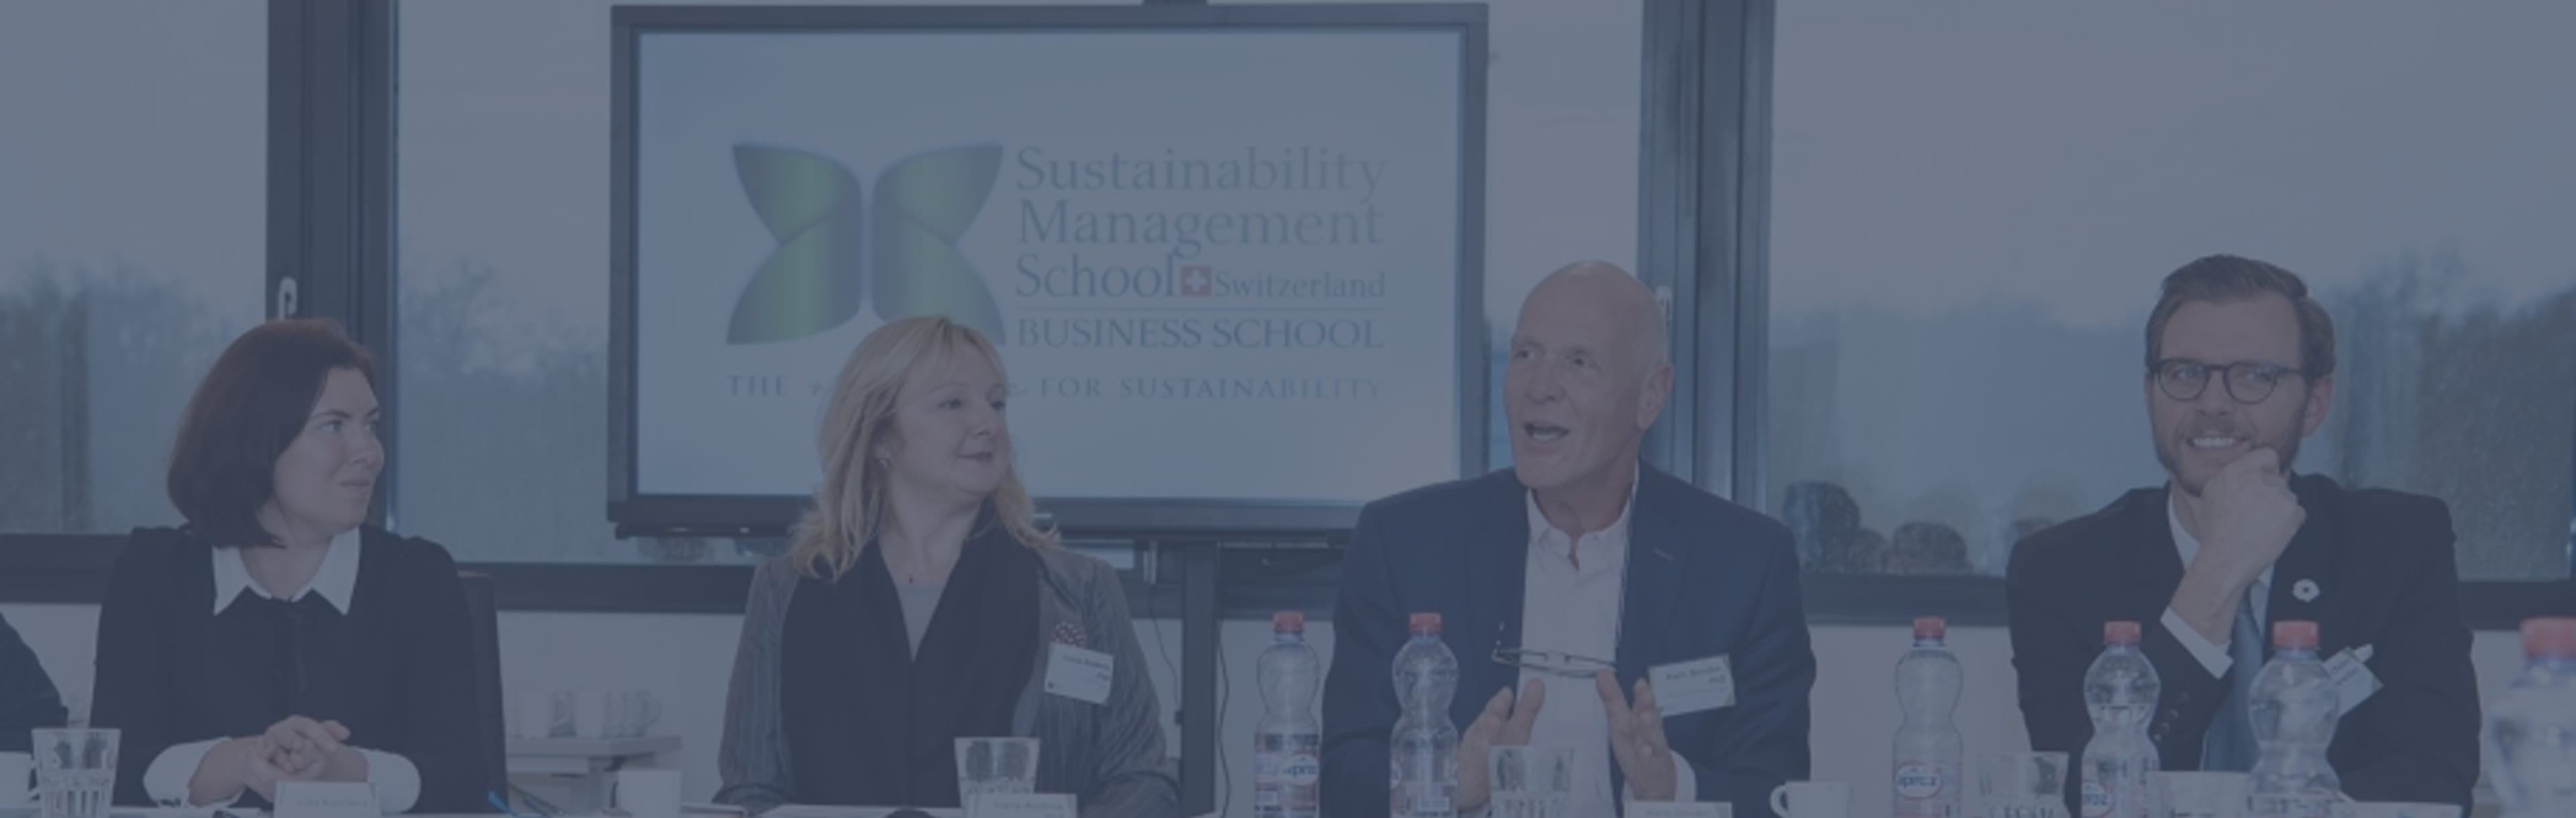 Sustainability Management School MAM en ligne dans la gestion du tourisme durable